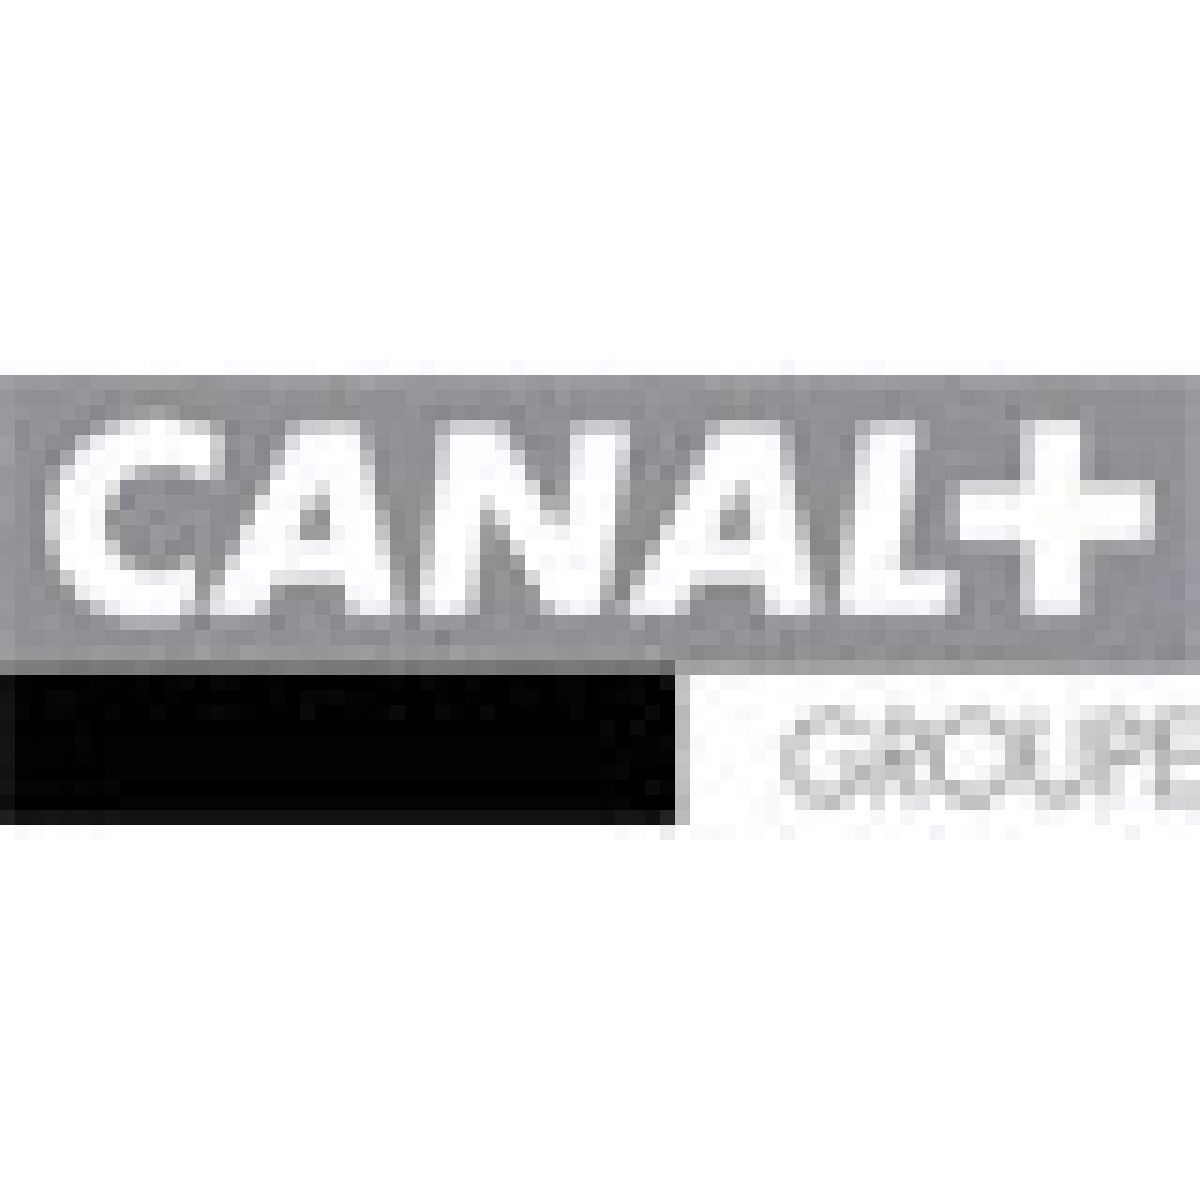 Plus de 10 millions d’abonnements chez Canal+/Canalsat